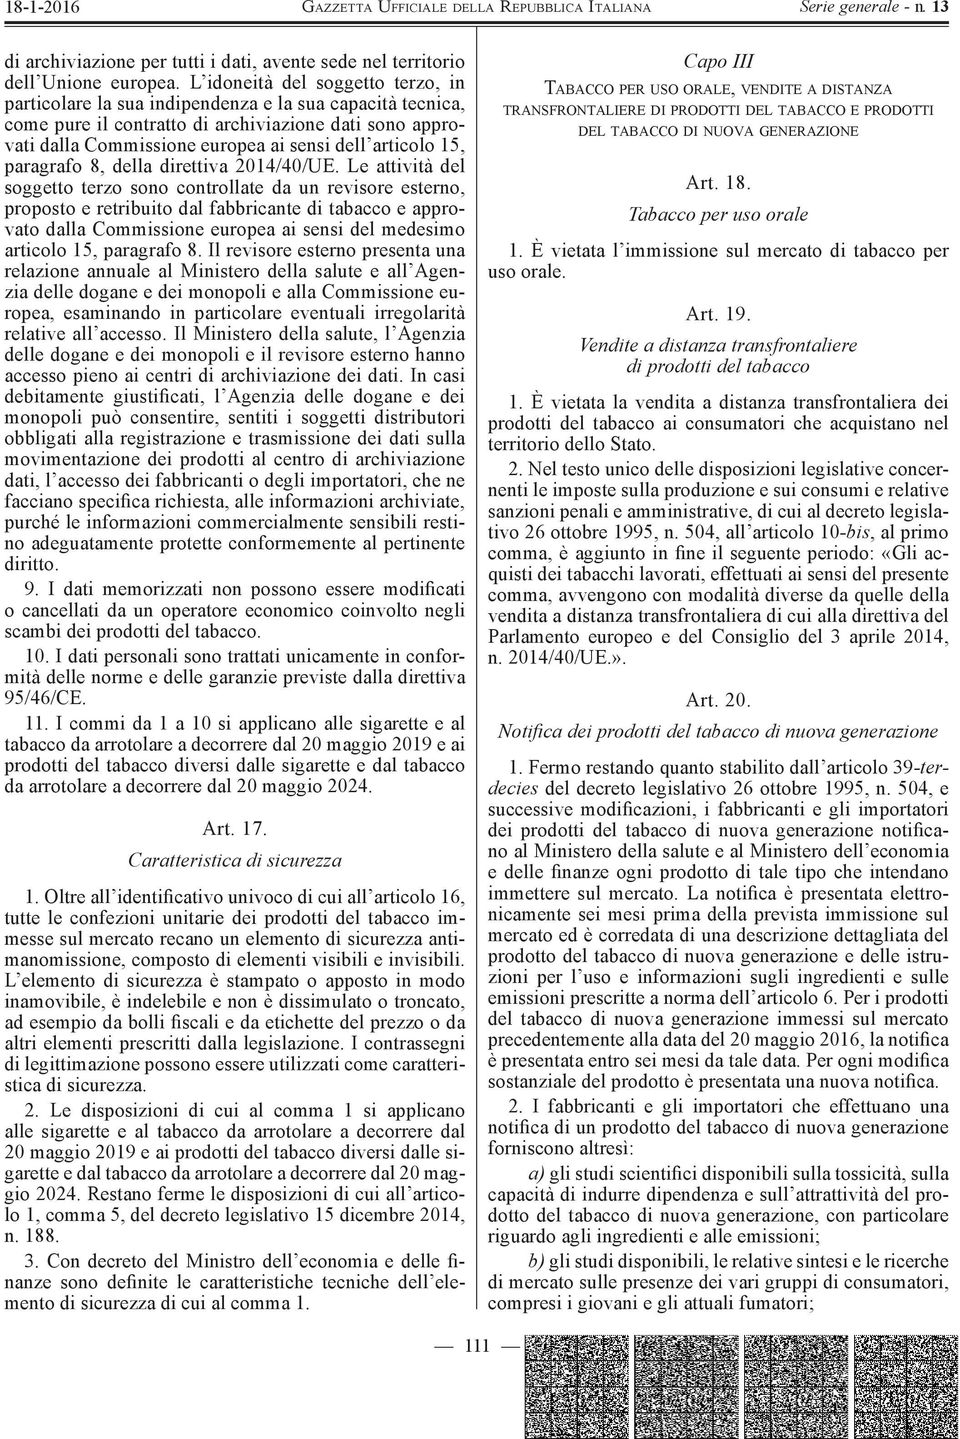 articolo 15, paragrafo 8, della direttiva 2014/40/UE.